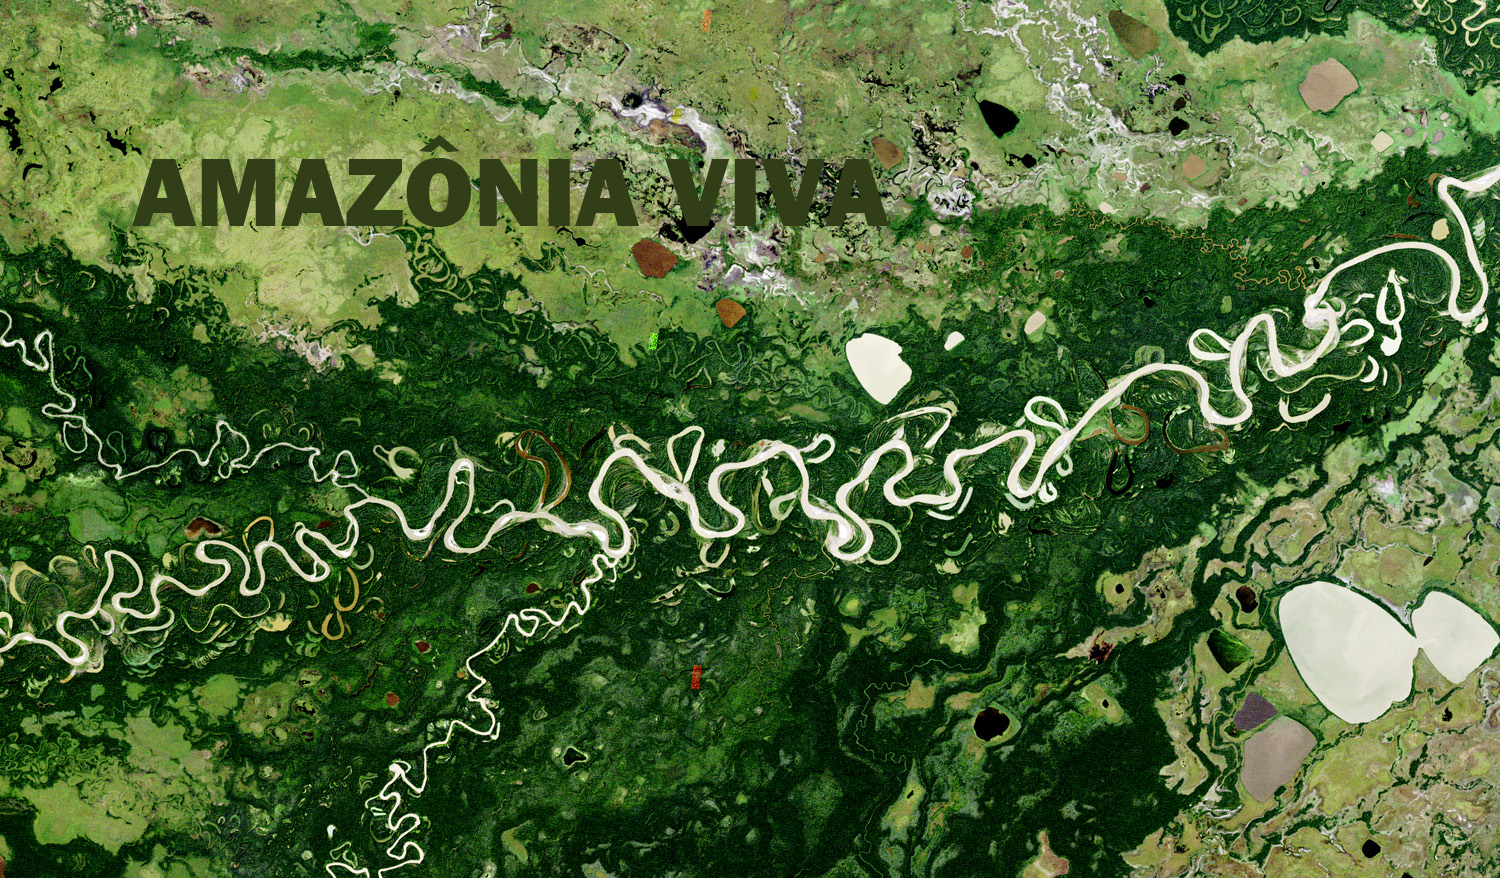 Pesquisa sobre conservação na Amazônia 8: recuperação de áreas degradadas versus proteção da floresta